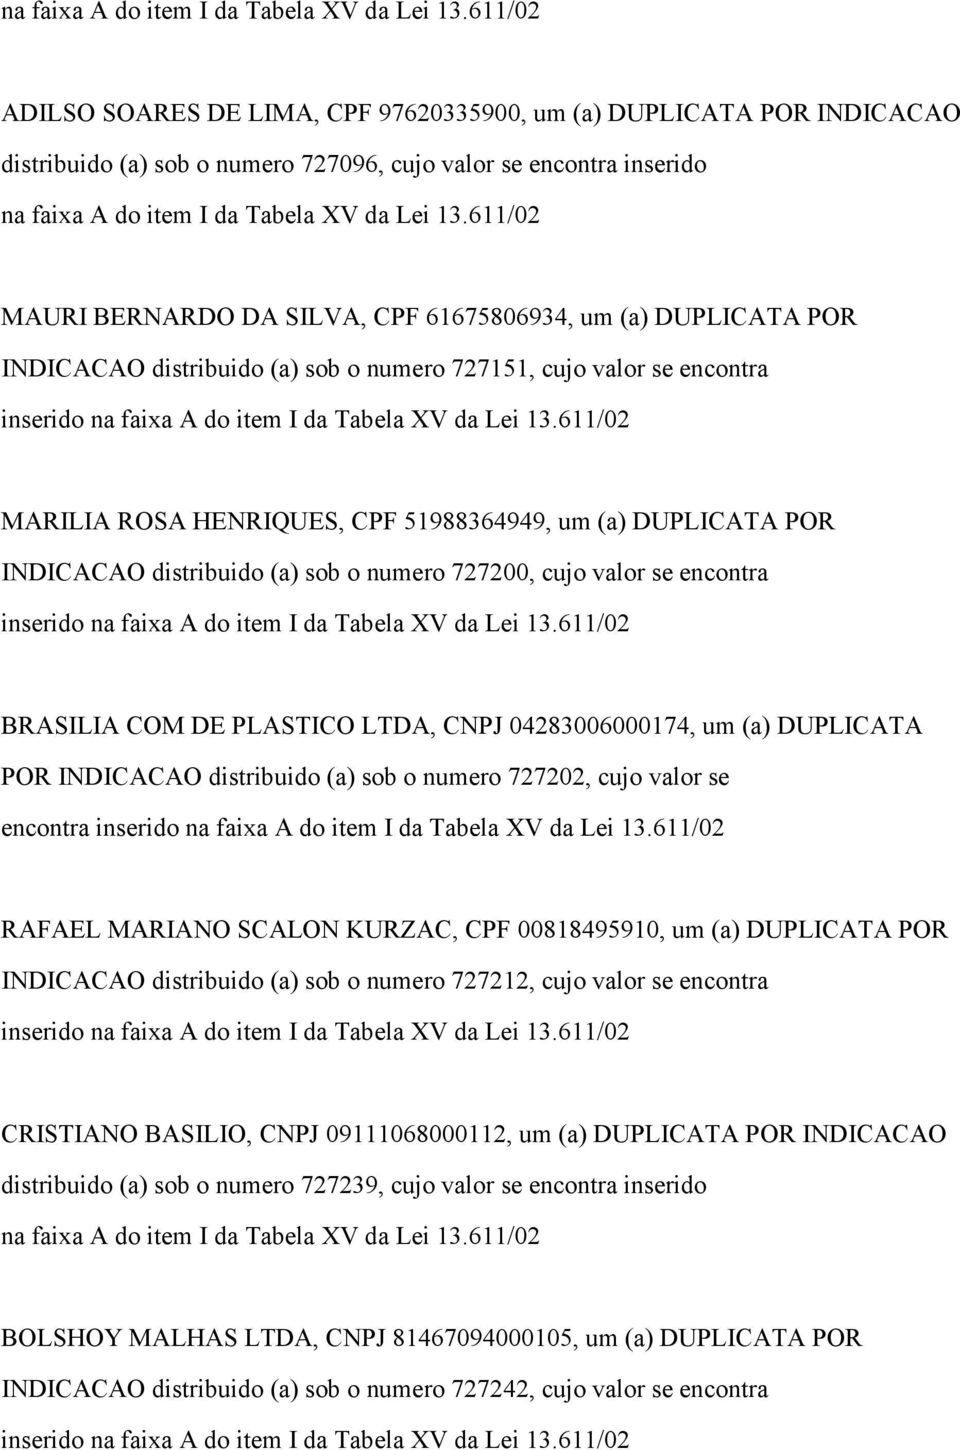 numero 727200, cujo valor se encontra BRASILIA COM DE PLASTICO LTDA, CNPJ 04283006000174, um (a) DUPLICATA POR INDICACAO distribuido (a) sob o numero 727202, cujo valor se encontra RAFAEL MARIANO